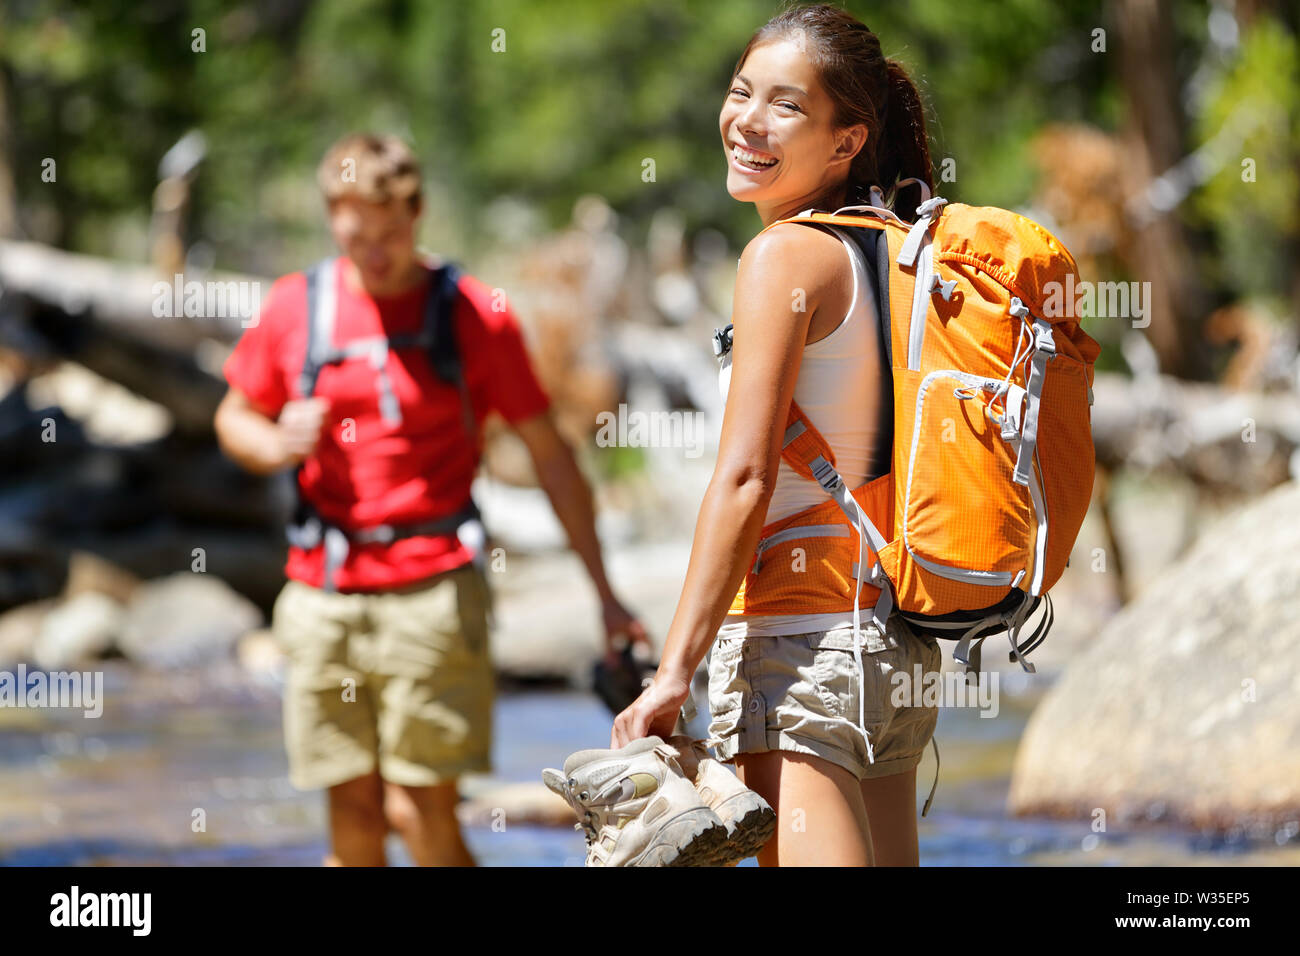 Escursionismo amici divertendosi Varcando il fiume nella foresta. Giovani adulti felice camminare a piedi nudi in acqua con i piedi bagnati su un viaggio avventura escursione in natura. Foto Stock